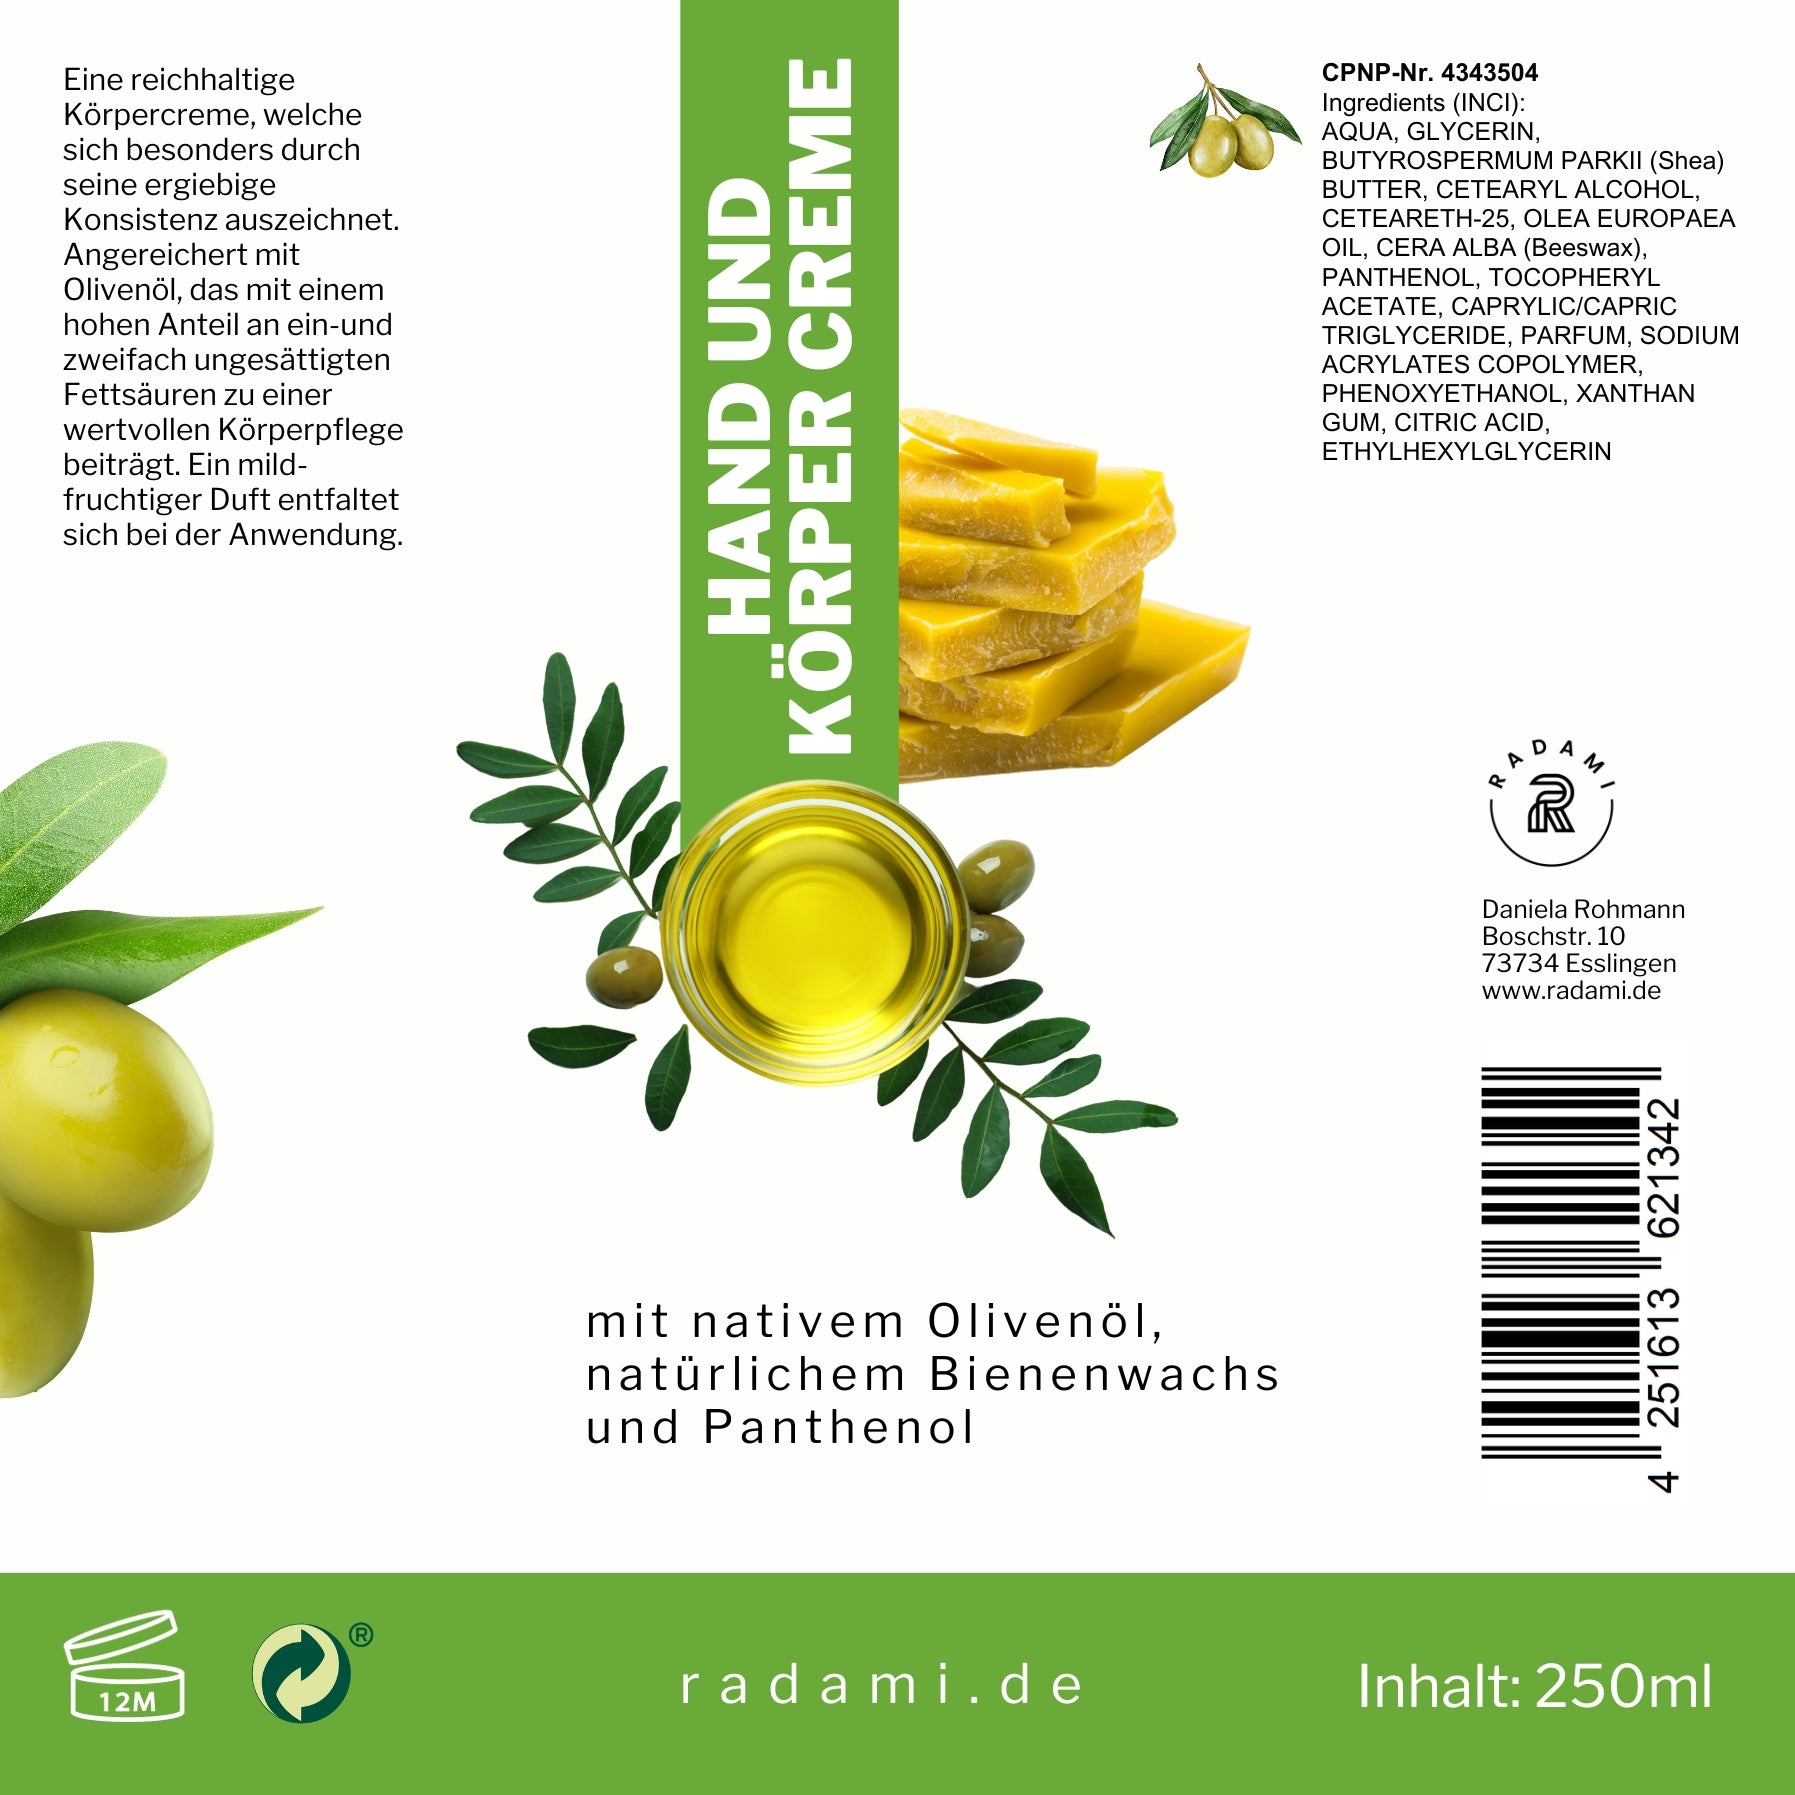 Bodylotion Handcreme Körpercreme mit Olivenöl, Bienenwachs und Panthenol 250 ml